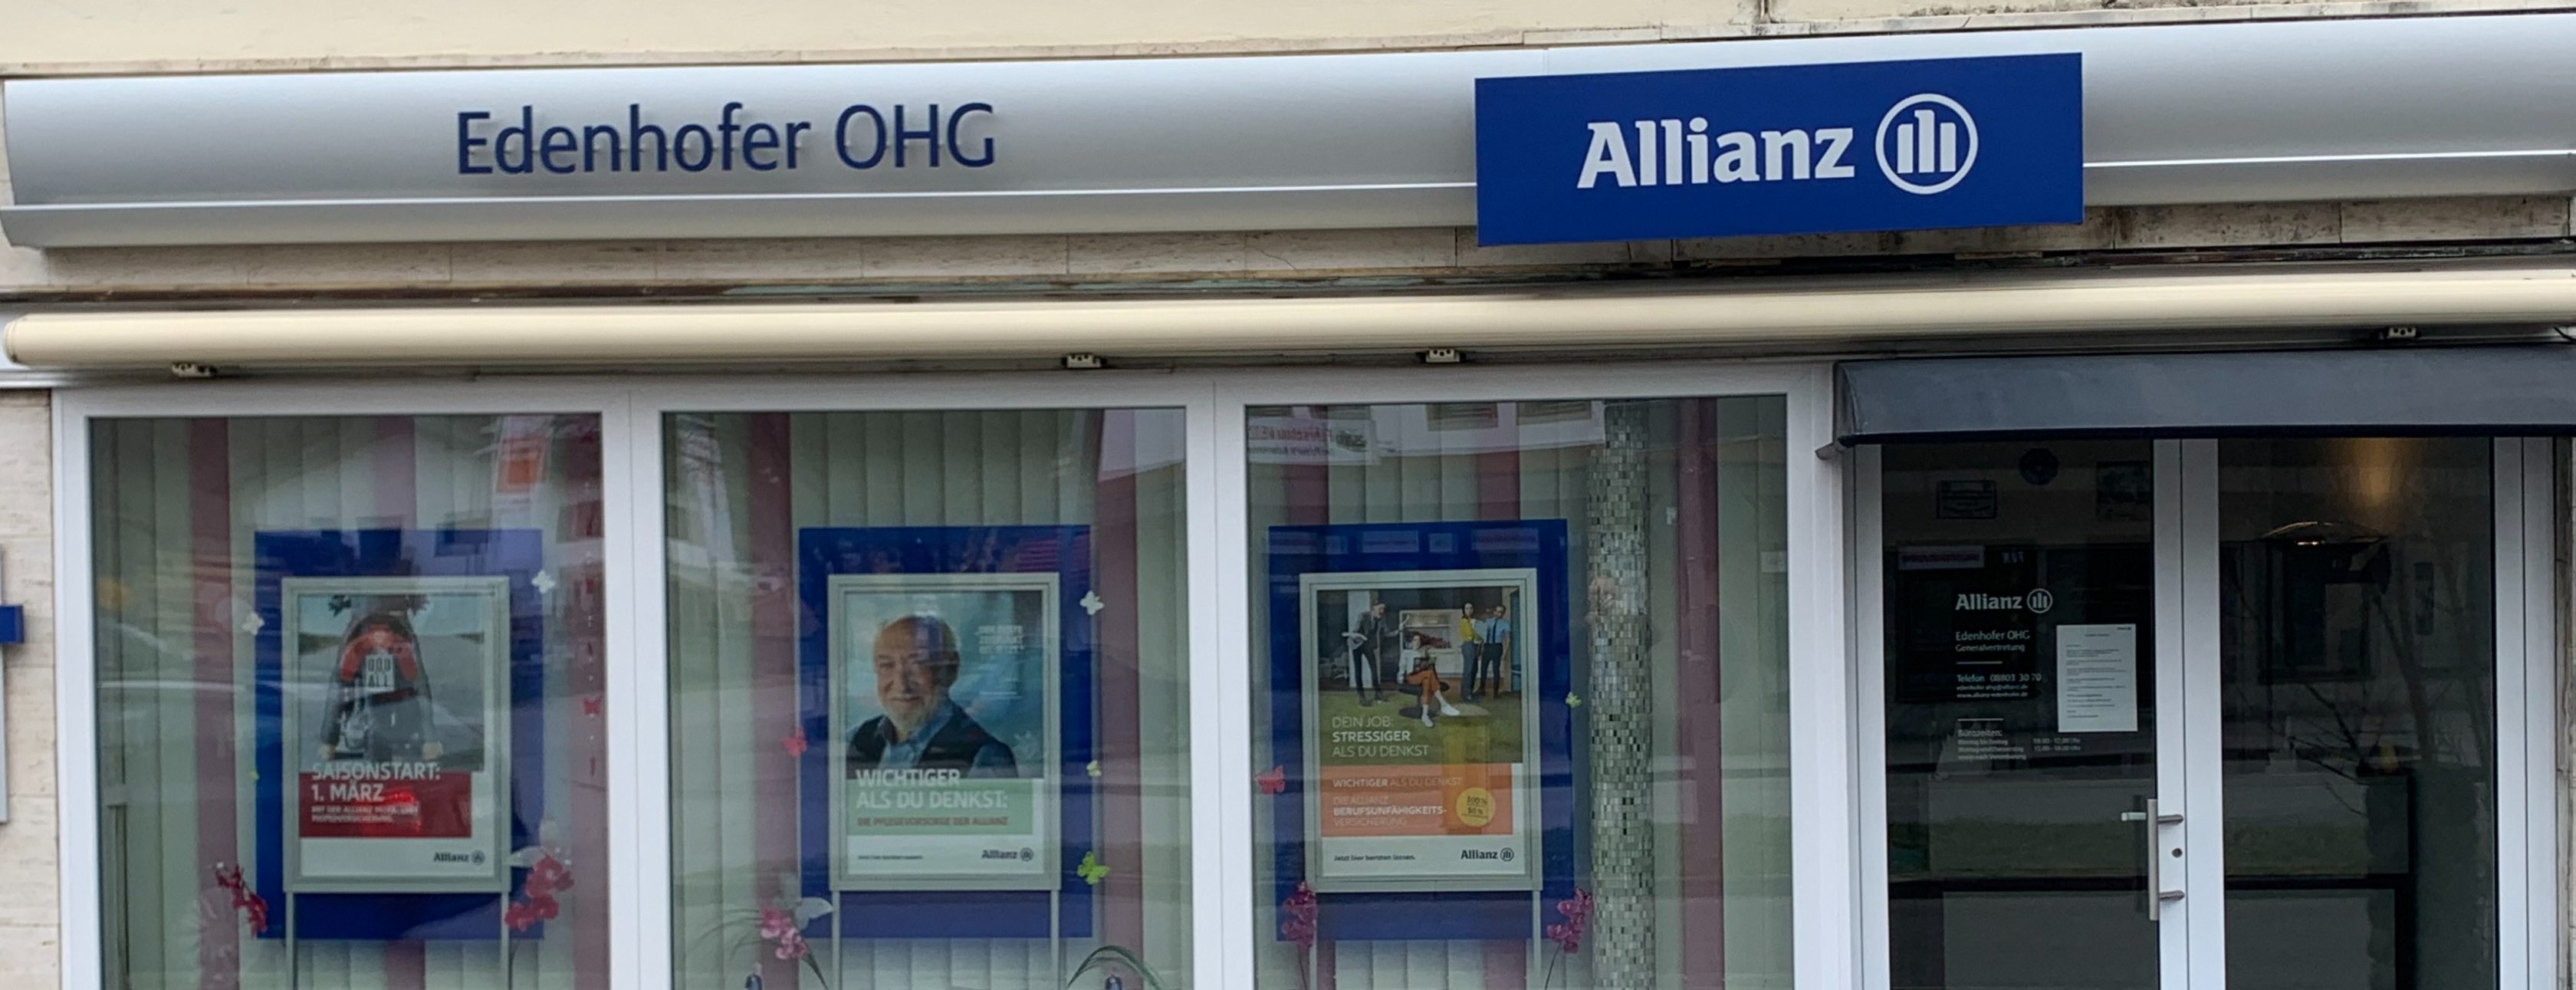 Allianz Versicherung Christian Edenhofer Peißenberg - Agenturansicht 